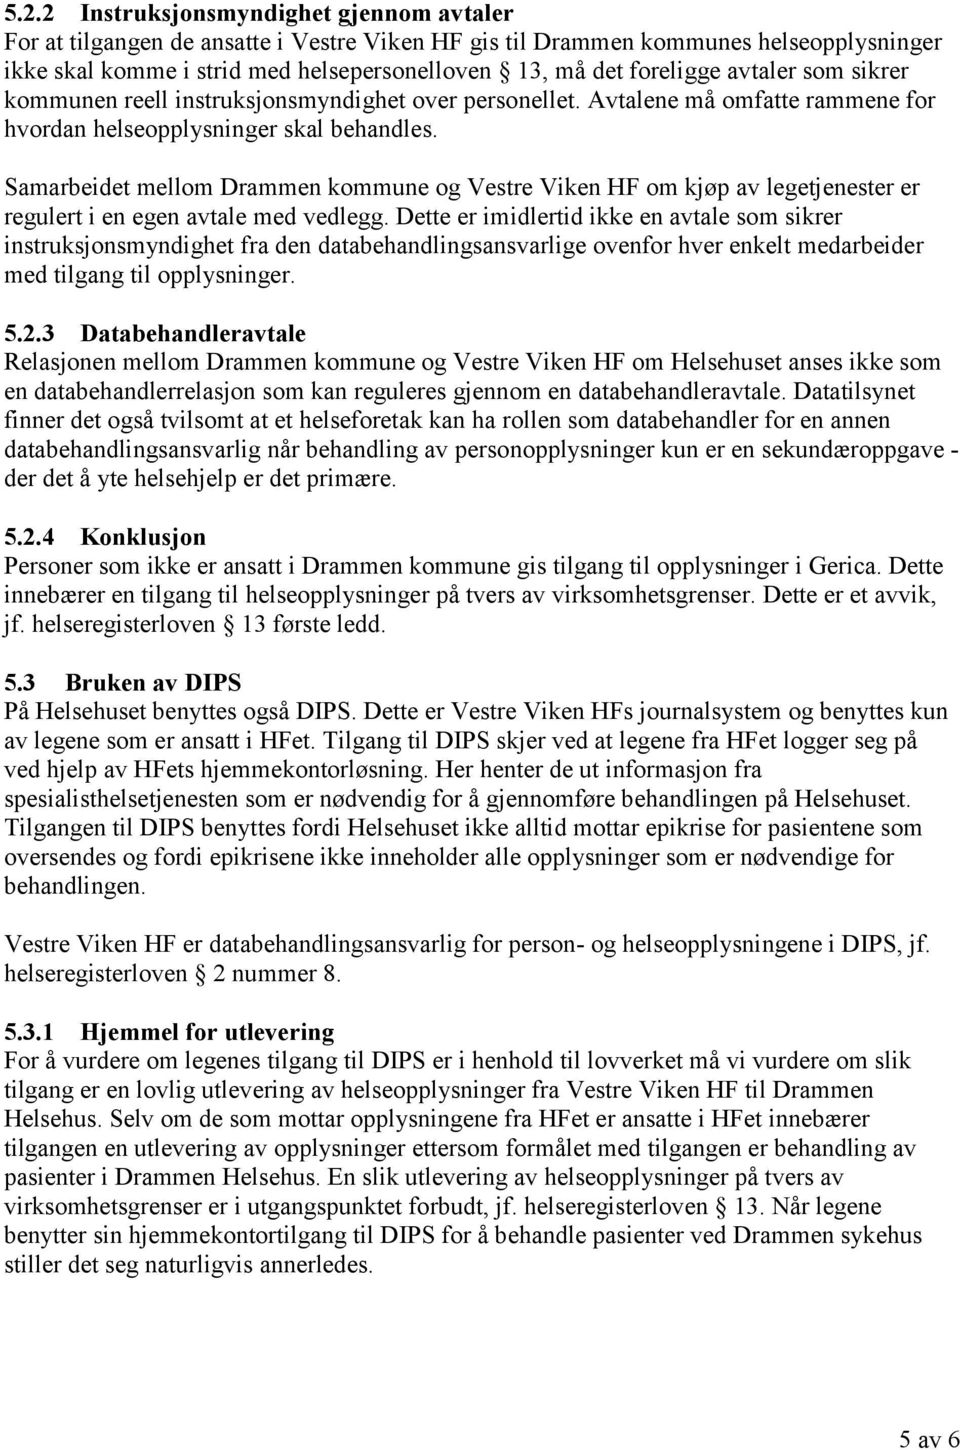 Samarbeidet mellom Drammen kommune og Vestre Viken HF om kjøp av legetjenester er regulert i en egen avtale med vedlegg.